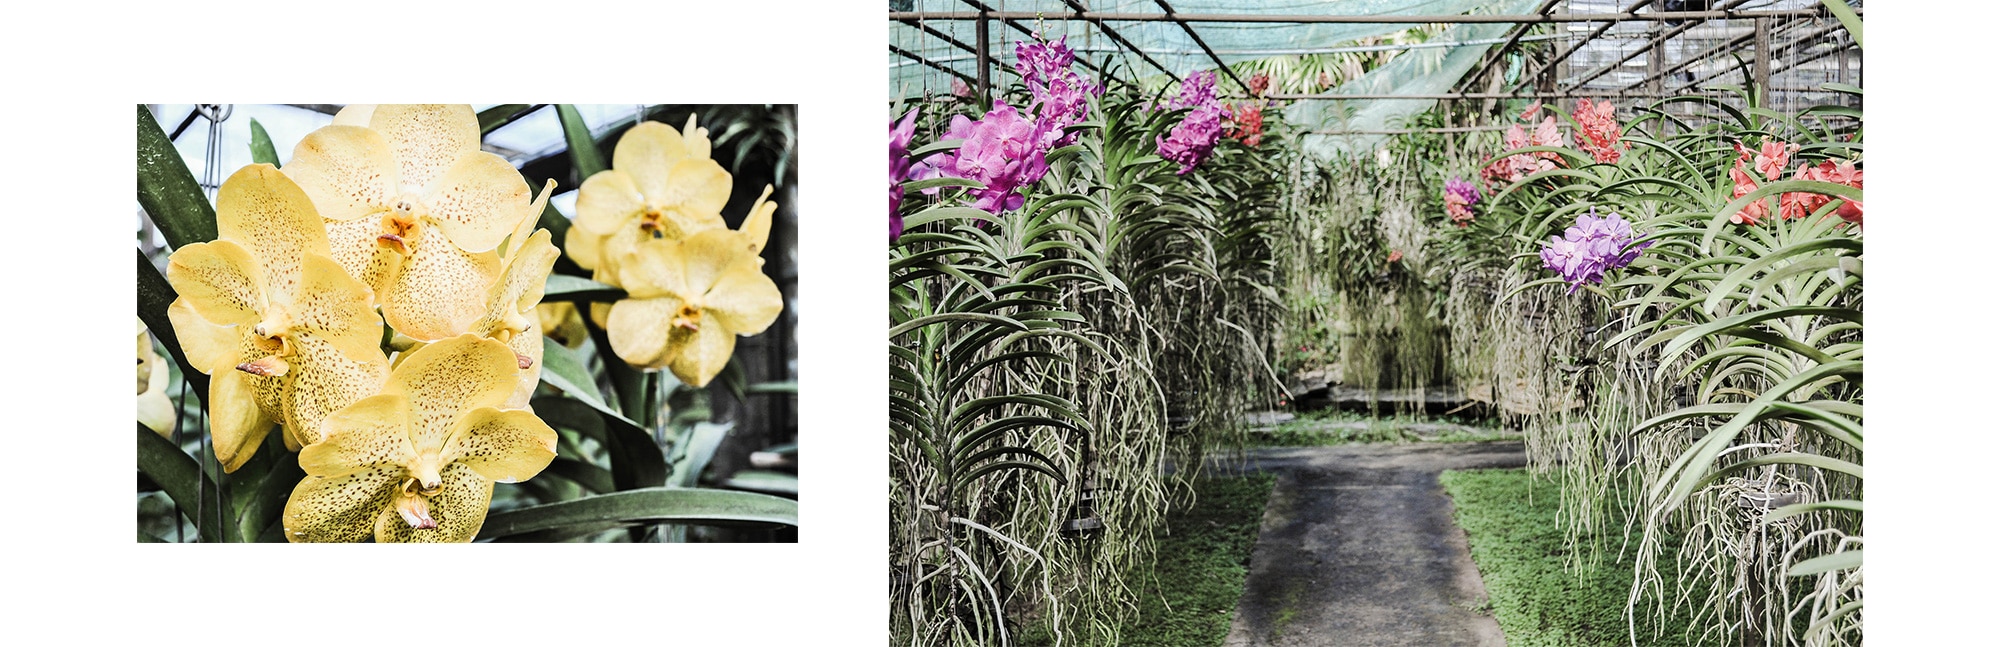 Serre d'orchidée en Thaïlande